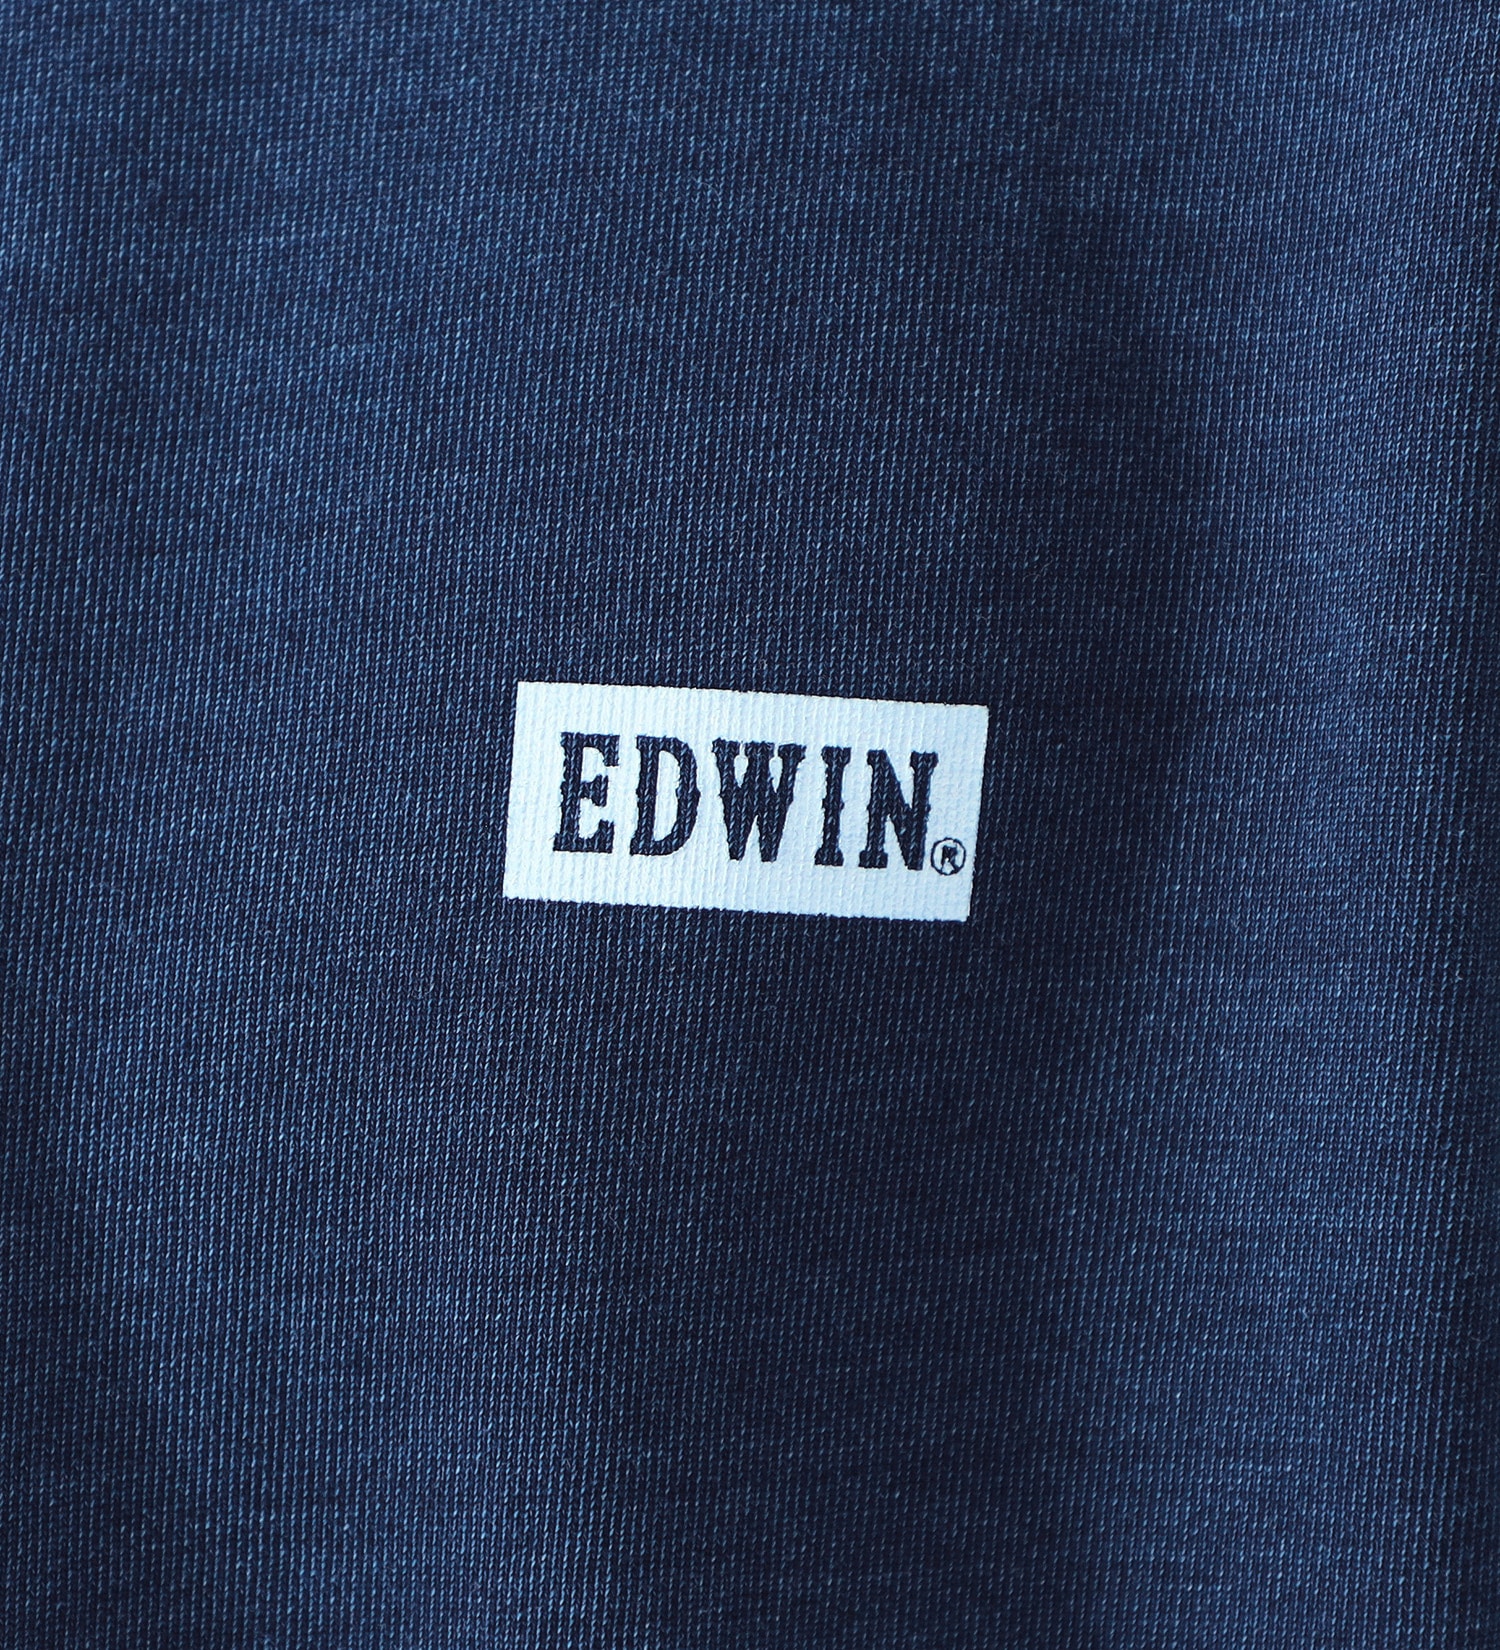 EDWIN(エドウイン)の【GW SALE】クルーネックワンポイントロゴスウェット【アウトレット店舗・WEB限定】|トップス/スウェット/メンズ|ダークブルー